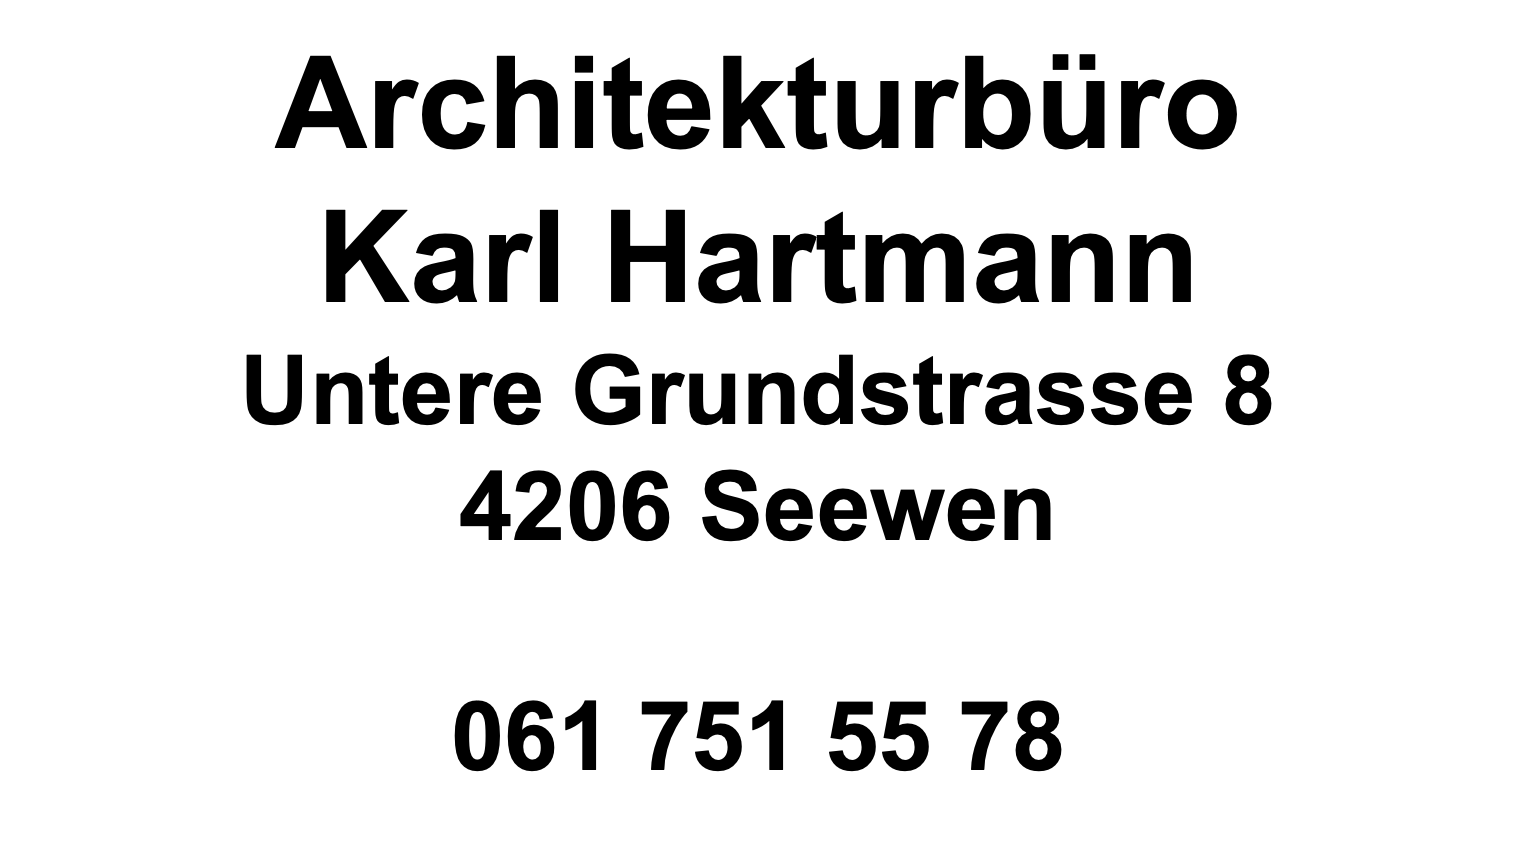 Architekturbüro Karl Hartmann